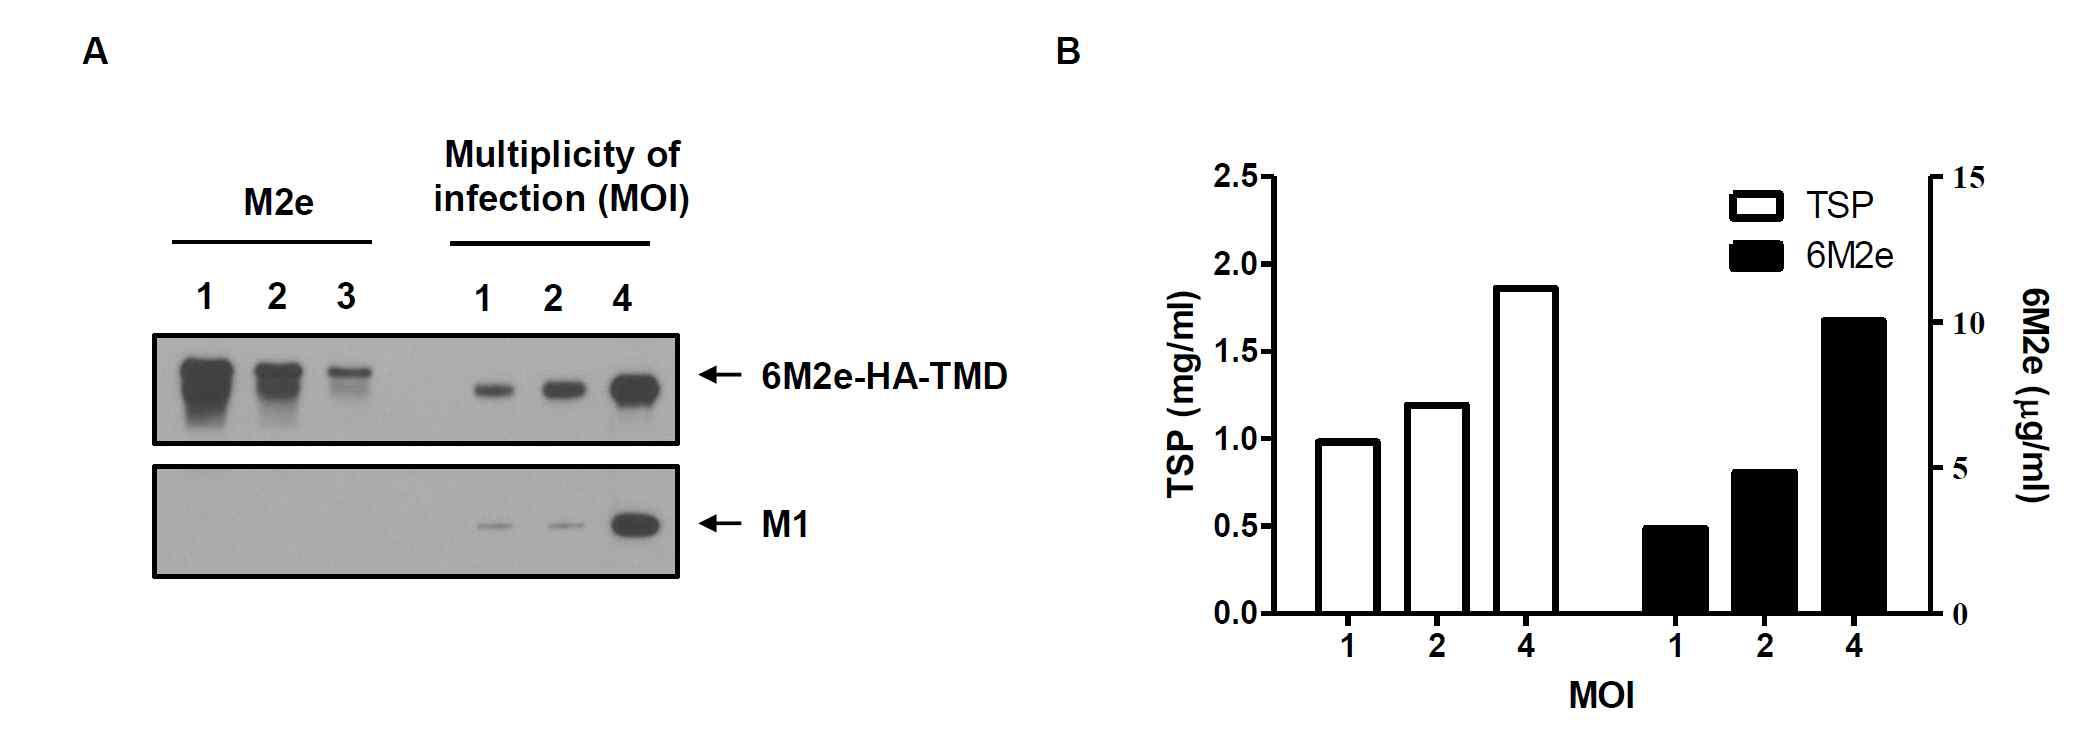 재조합 배큘로바이러스 (rBac/M1, rBac/6M2e-HA-TMD)의 TN-5B1-4 세포 감염 농도에 따른 범용백신용 VLP 생산을 비교함.